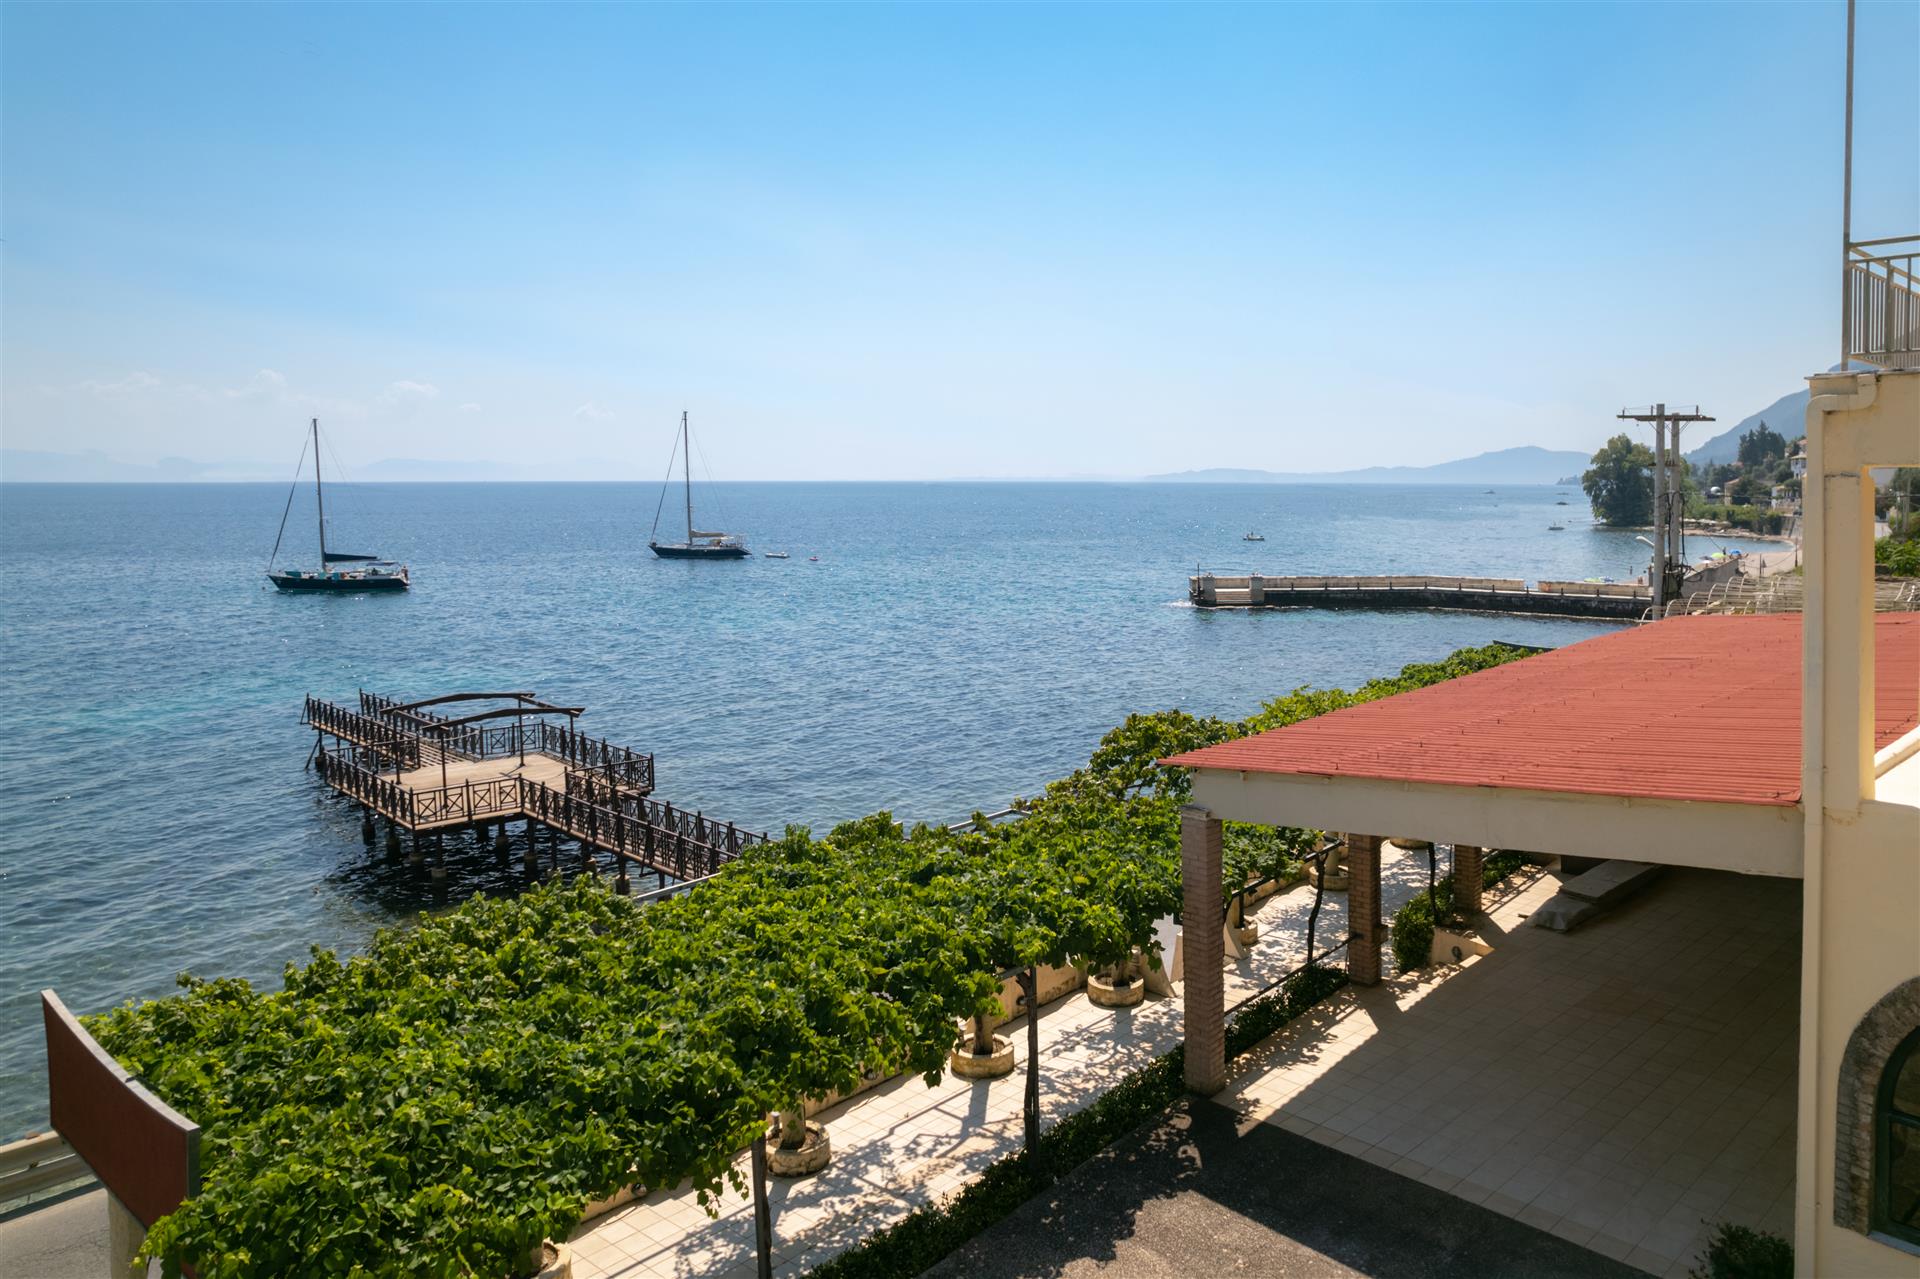 Kompleks handlowo-mieszkalny na wschodnim wybrzeżu Korfu